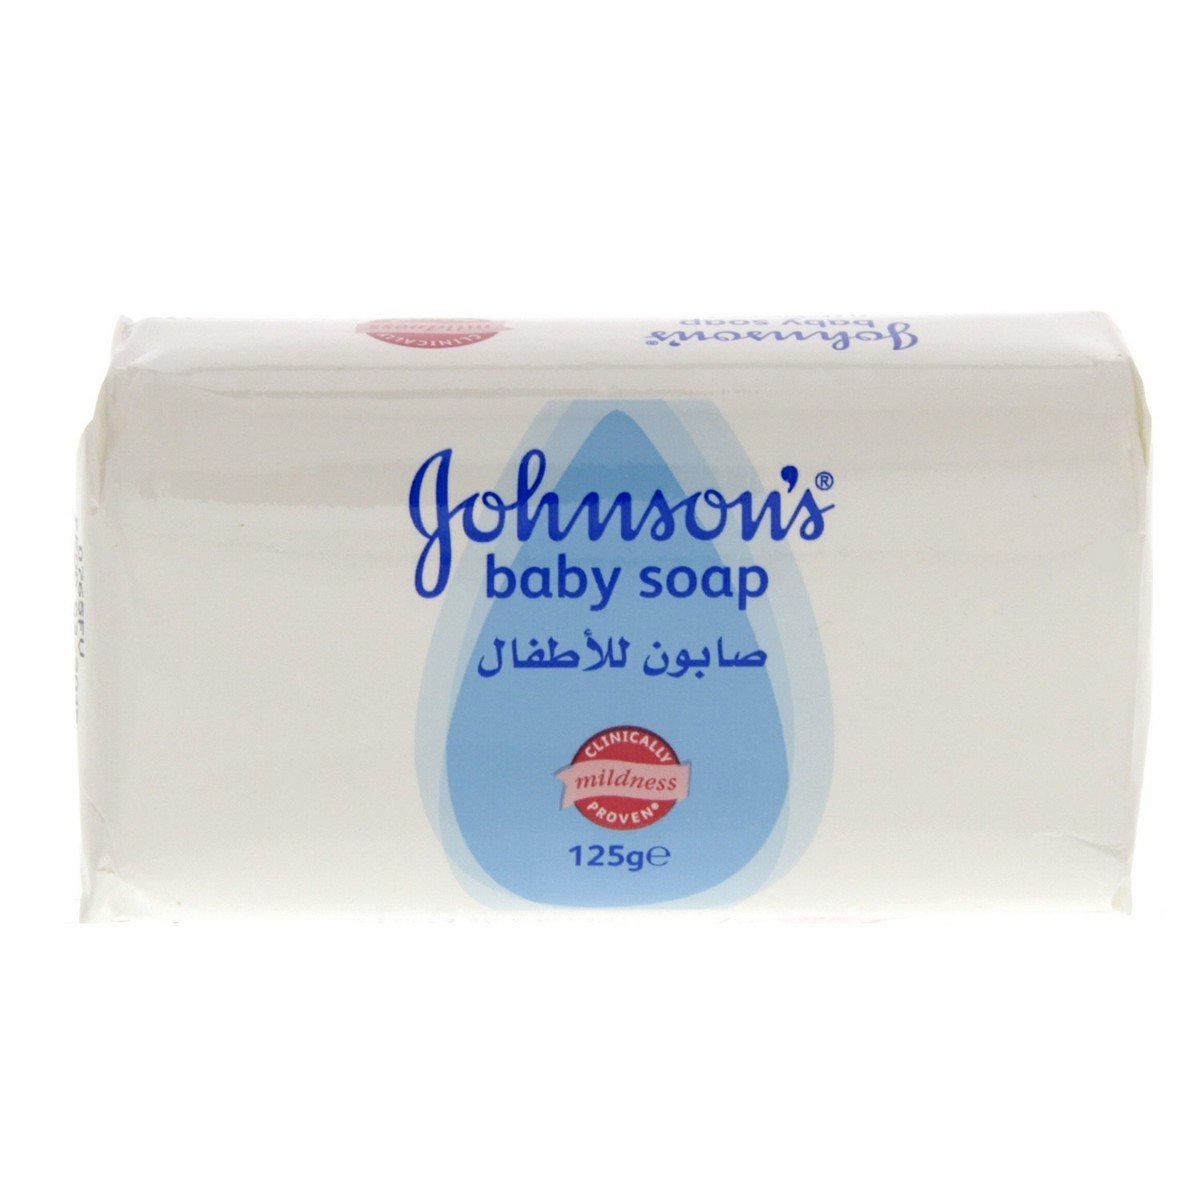 Johnson's Baby Soap 125g x 6pcs